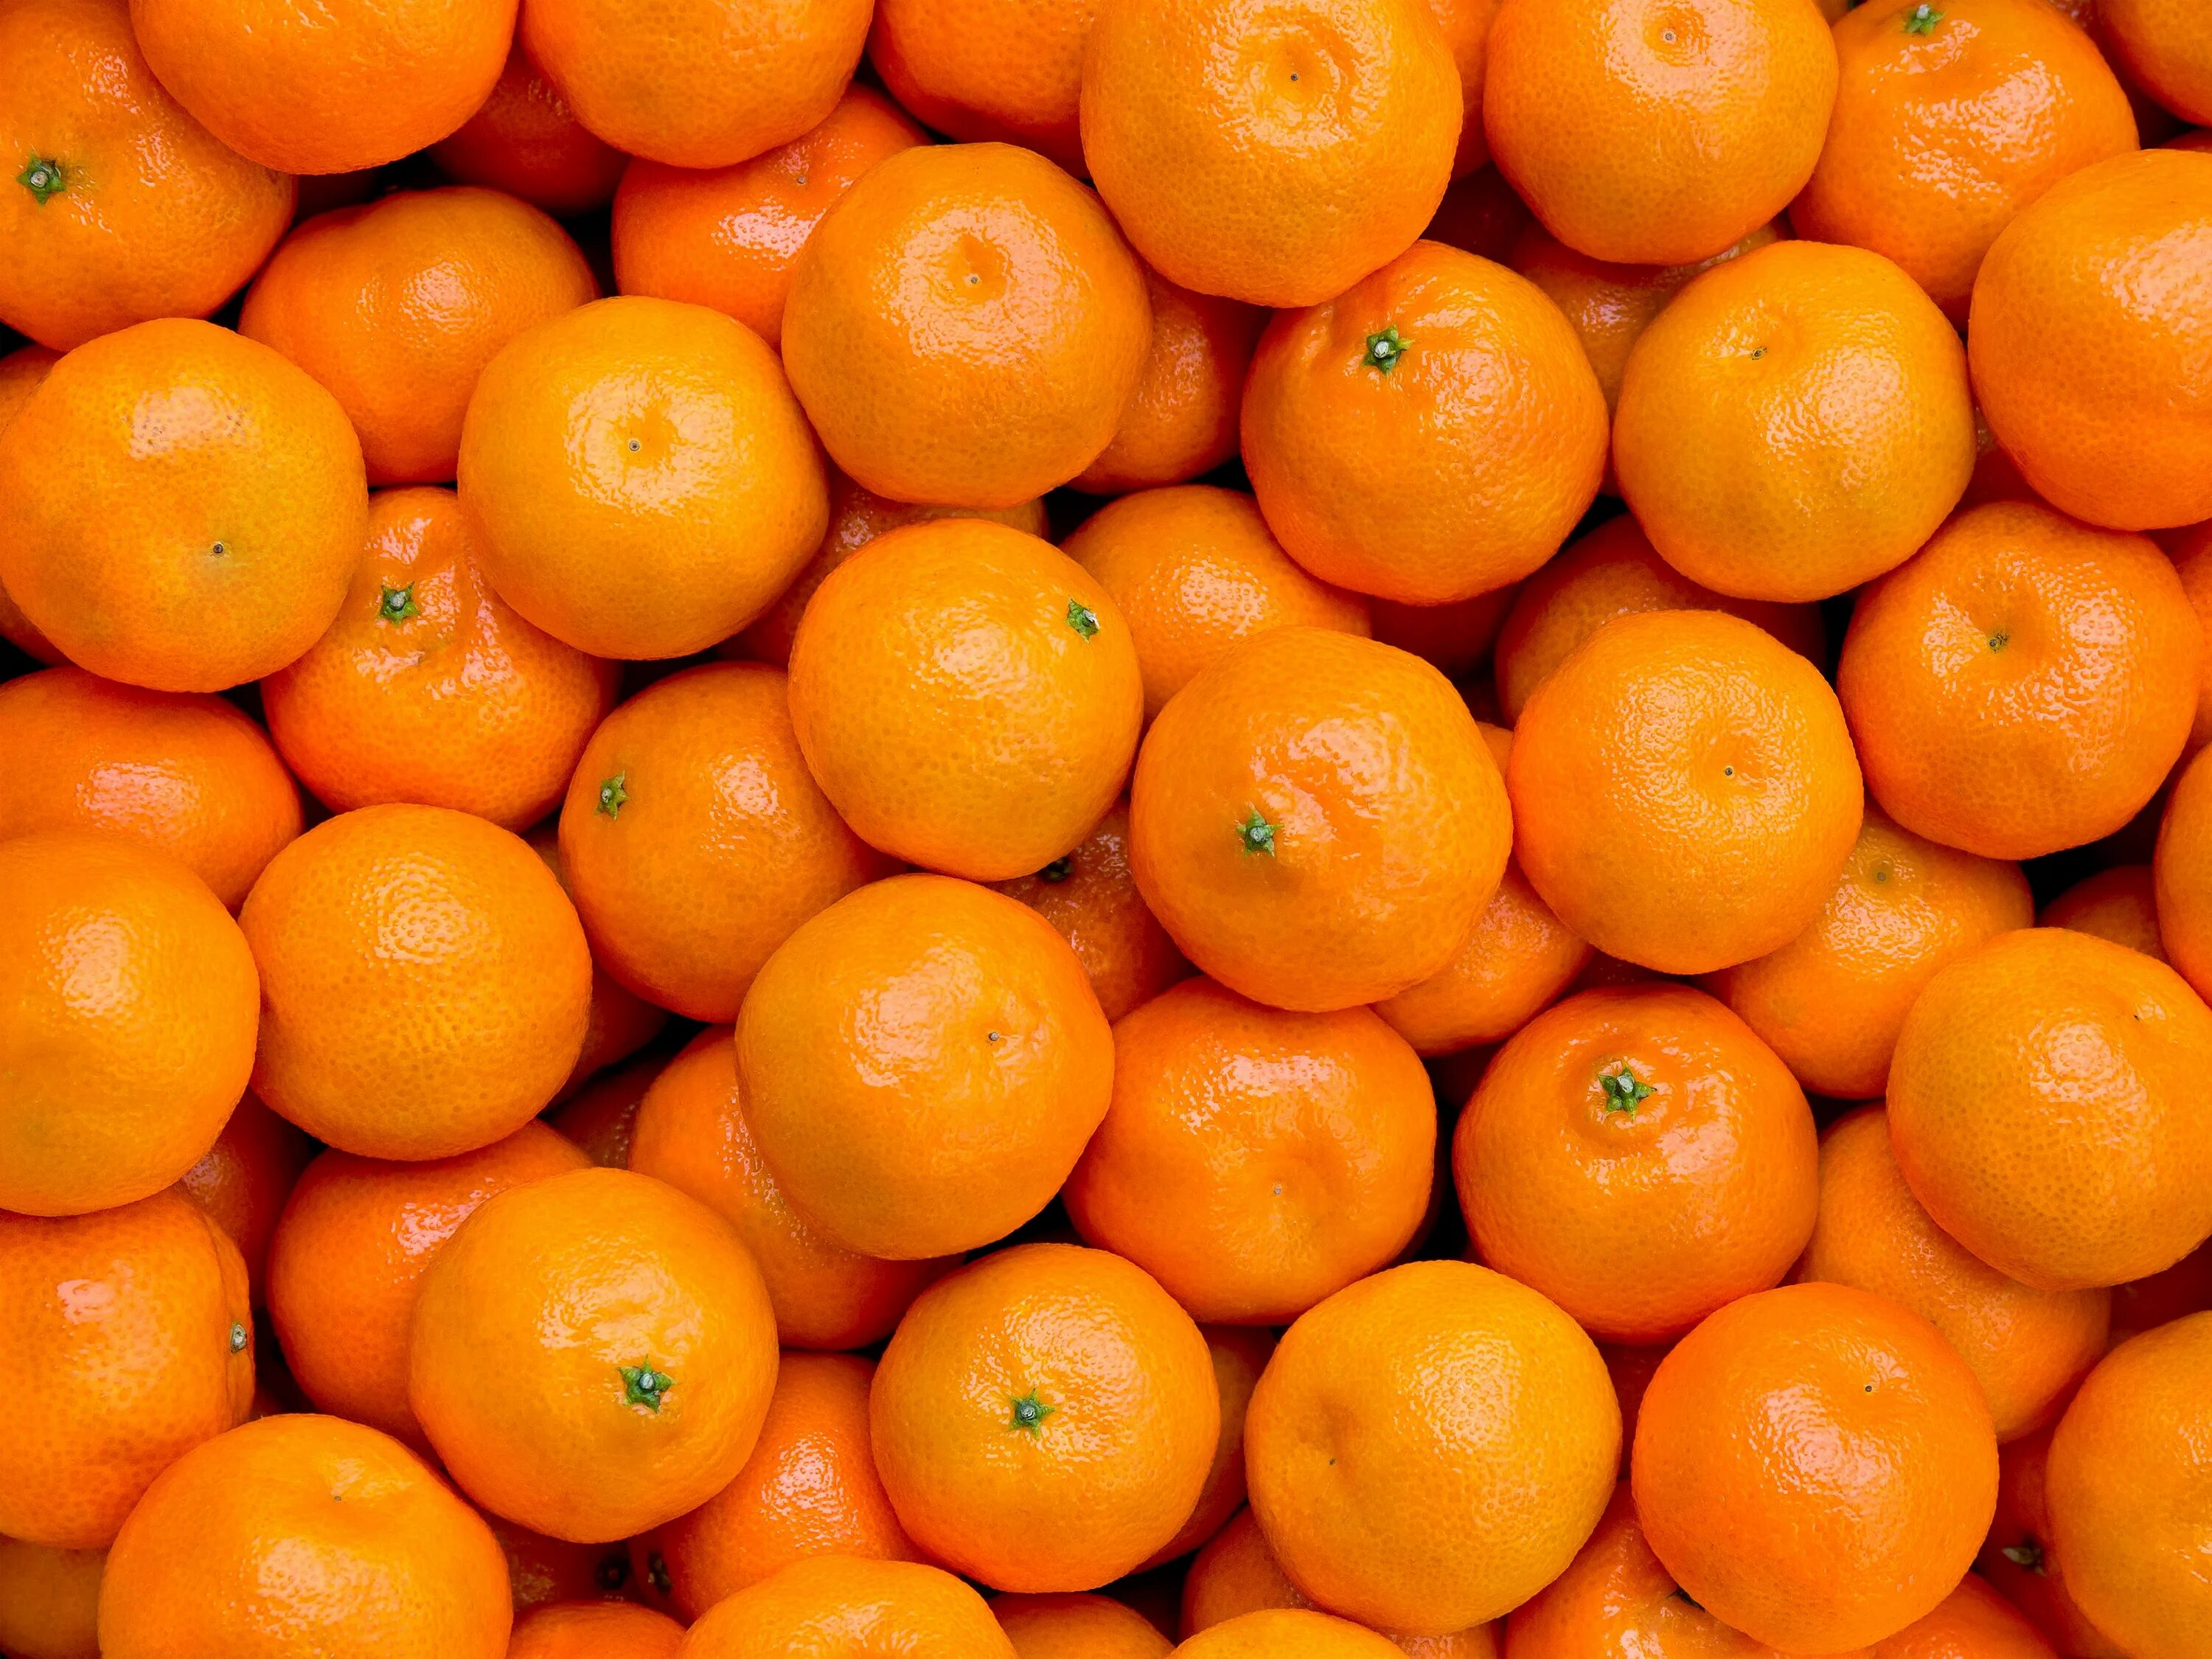 They like oranges. Мандарины Марокко сорт Валенсиана. Мандарины Марокко 1кг. Мандарины Аргентина. Оранжевый мандарин.